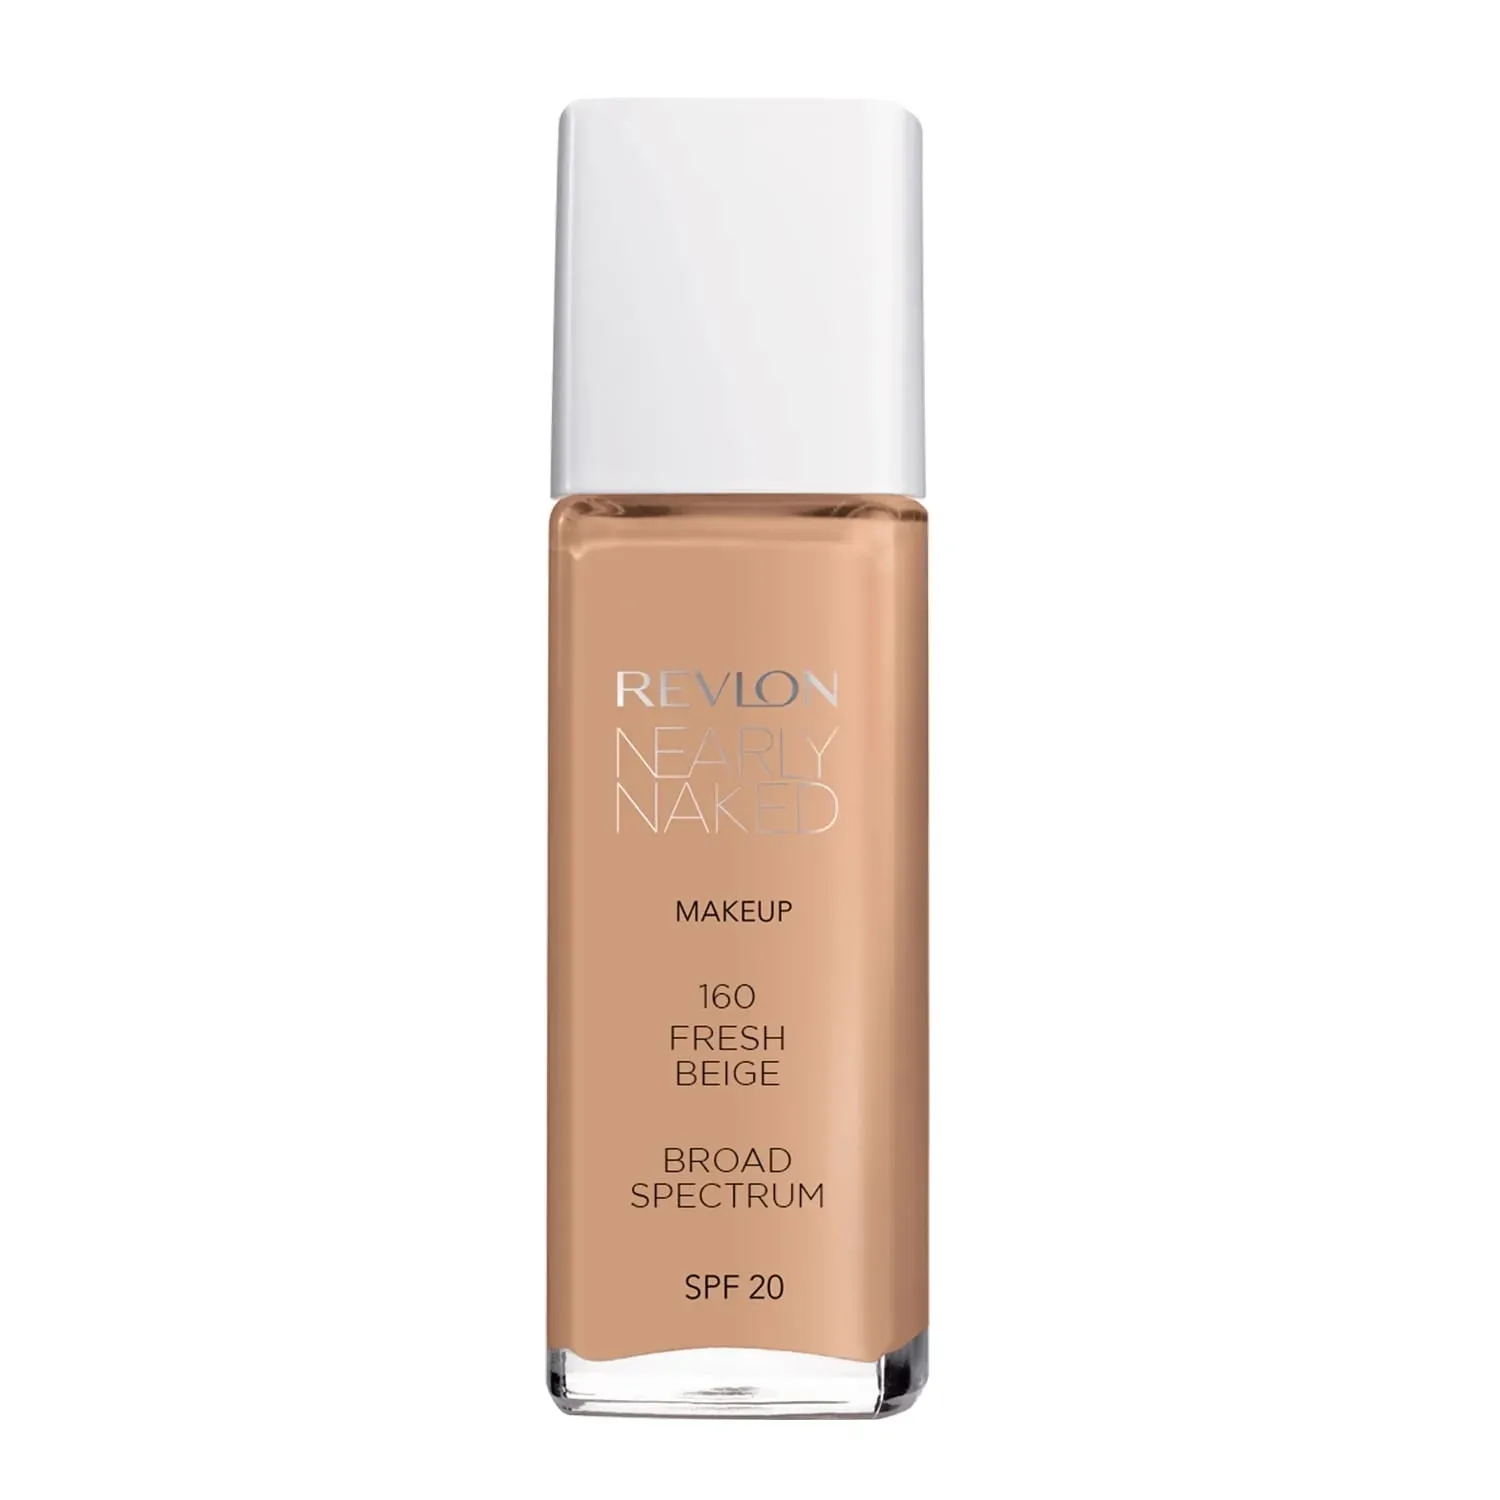 Revlon | Revlon Nearly Naked Makeup Foundation - 160 Fresh Beige (30ml)